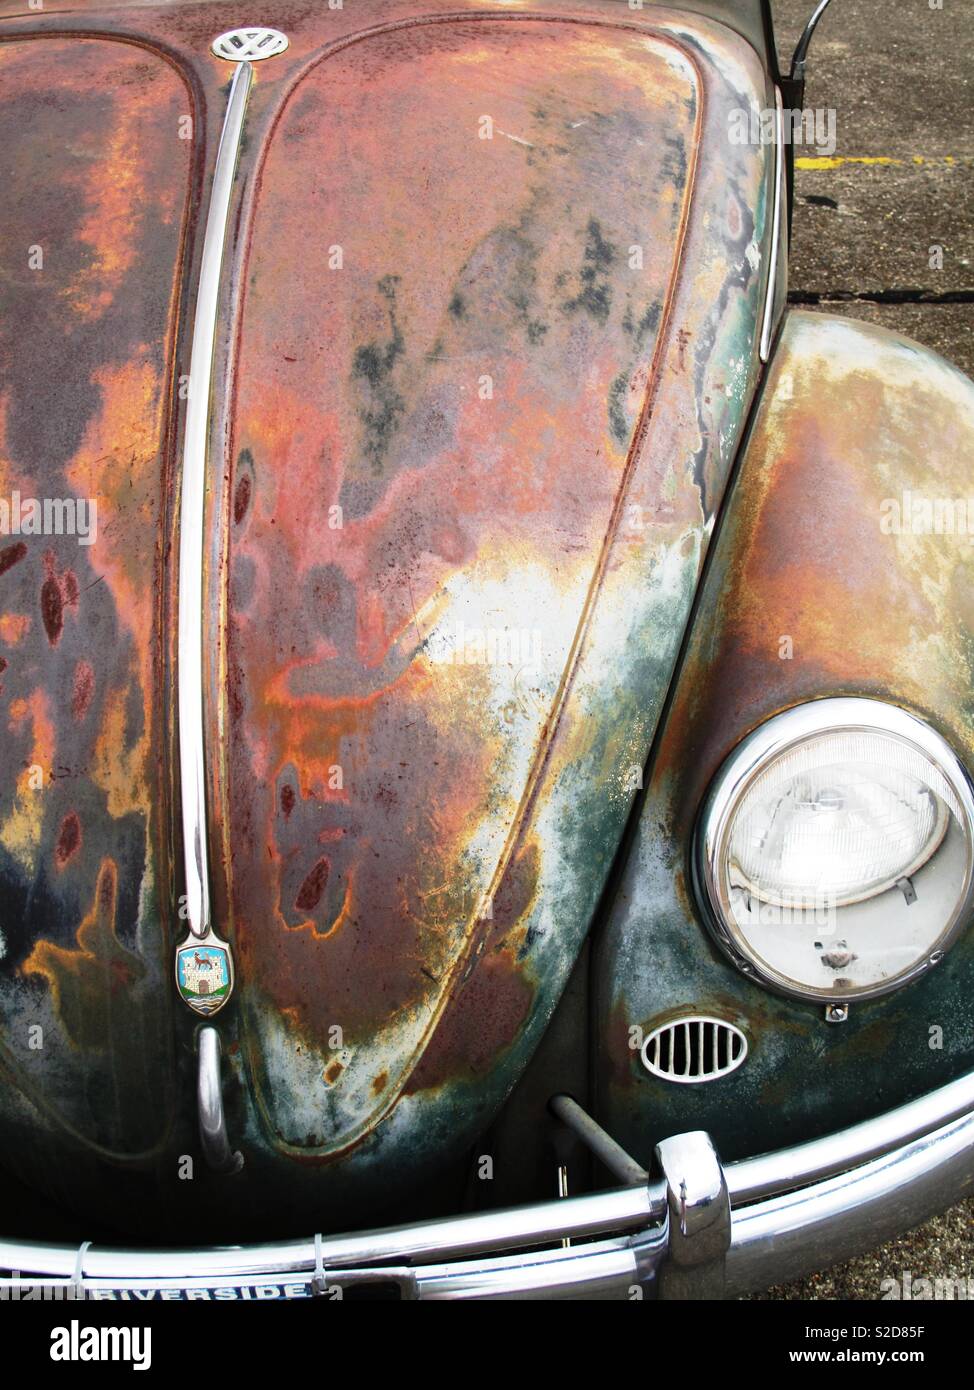 Rusty Volkswagen Beetle bonnet, taken at Volkswagen show, this type of patina is called ratlook Stock Photo